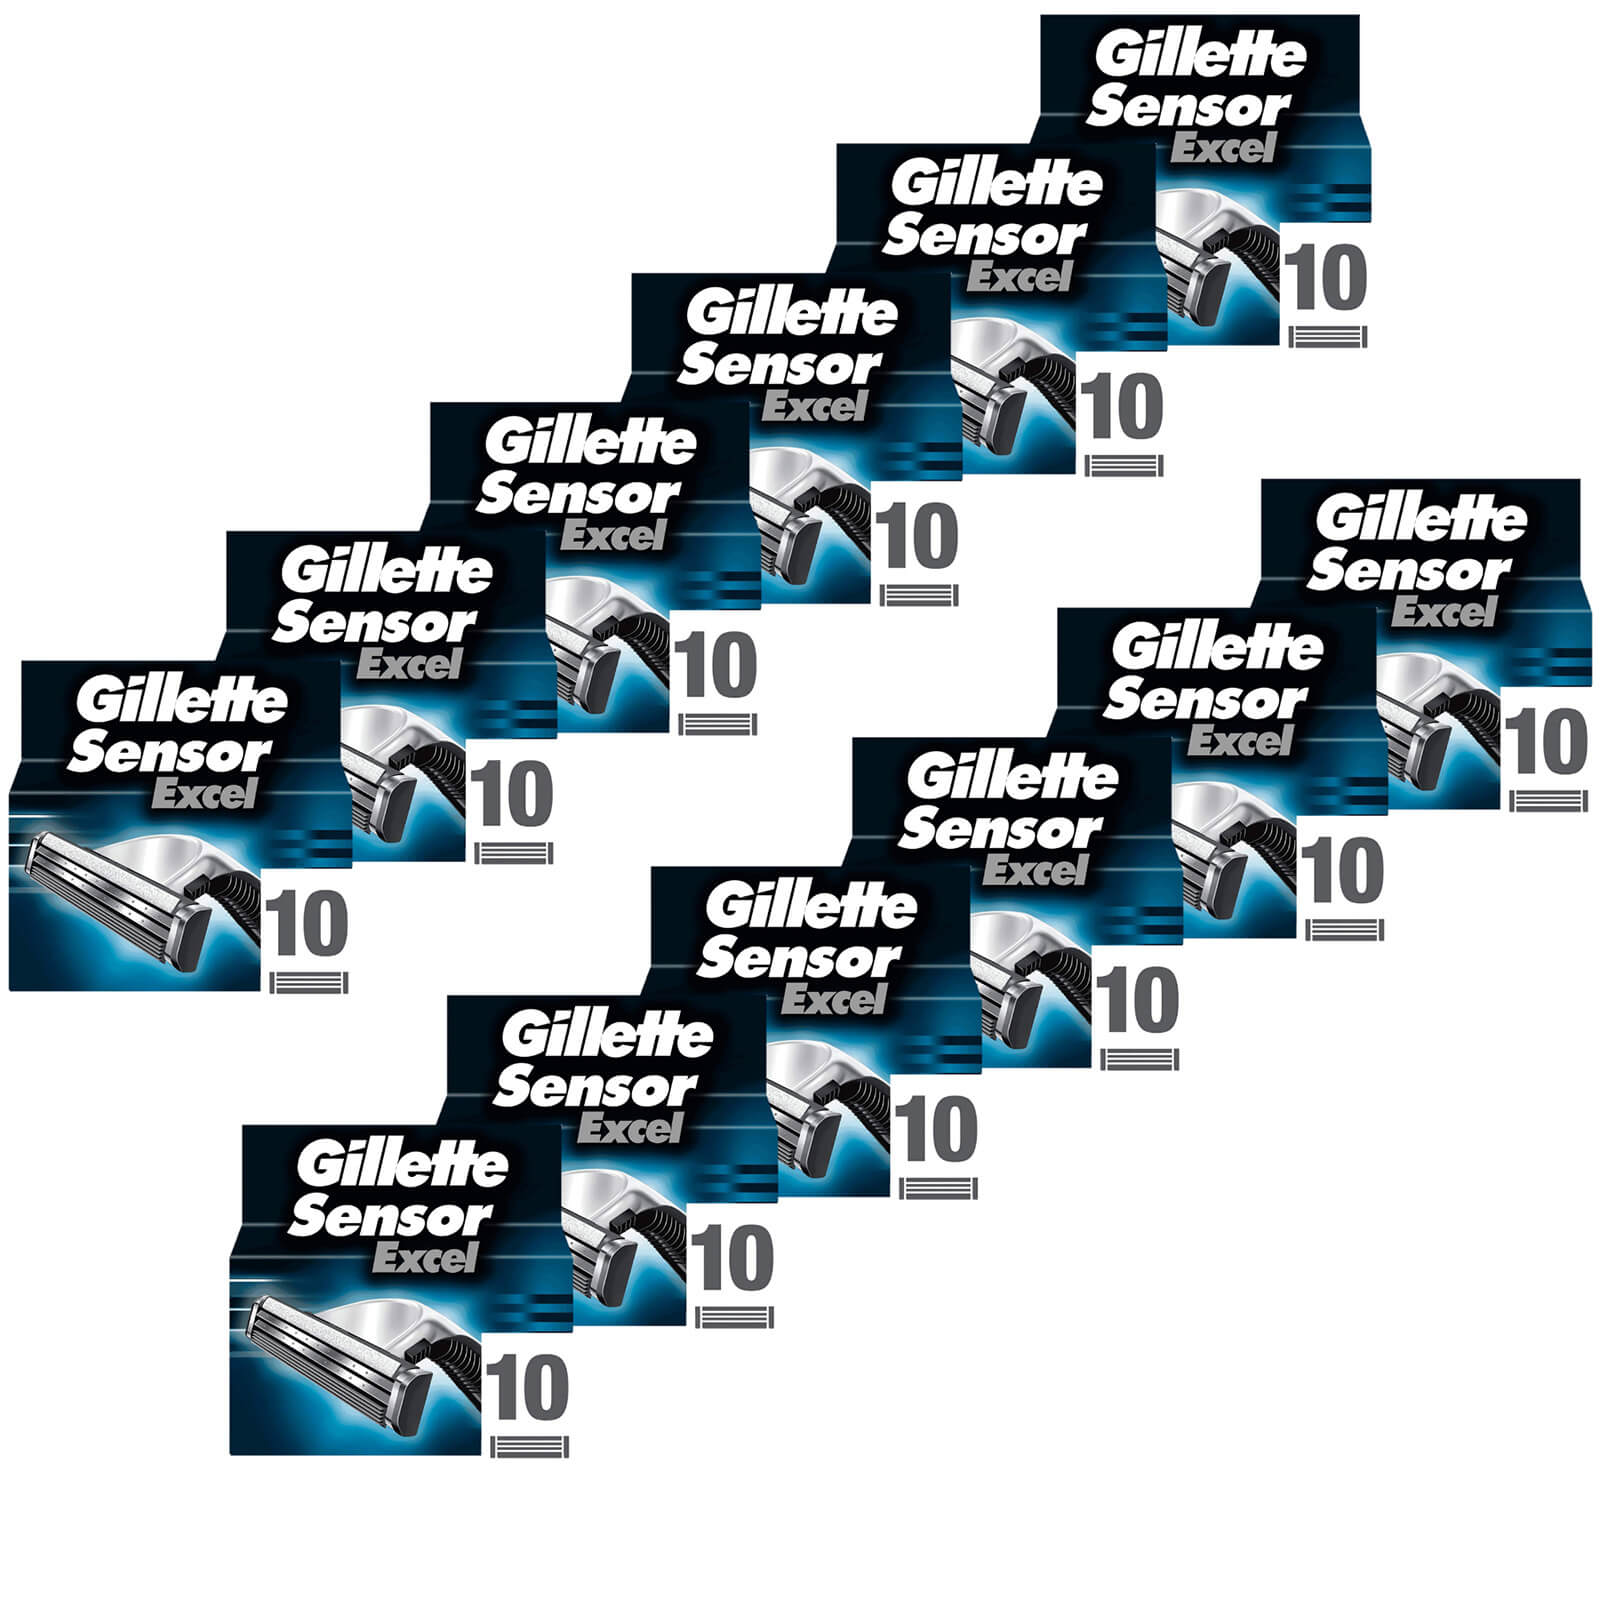 Gillette Sensor Excel Razor Blades - 120 Pack - 12 Months